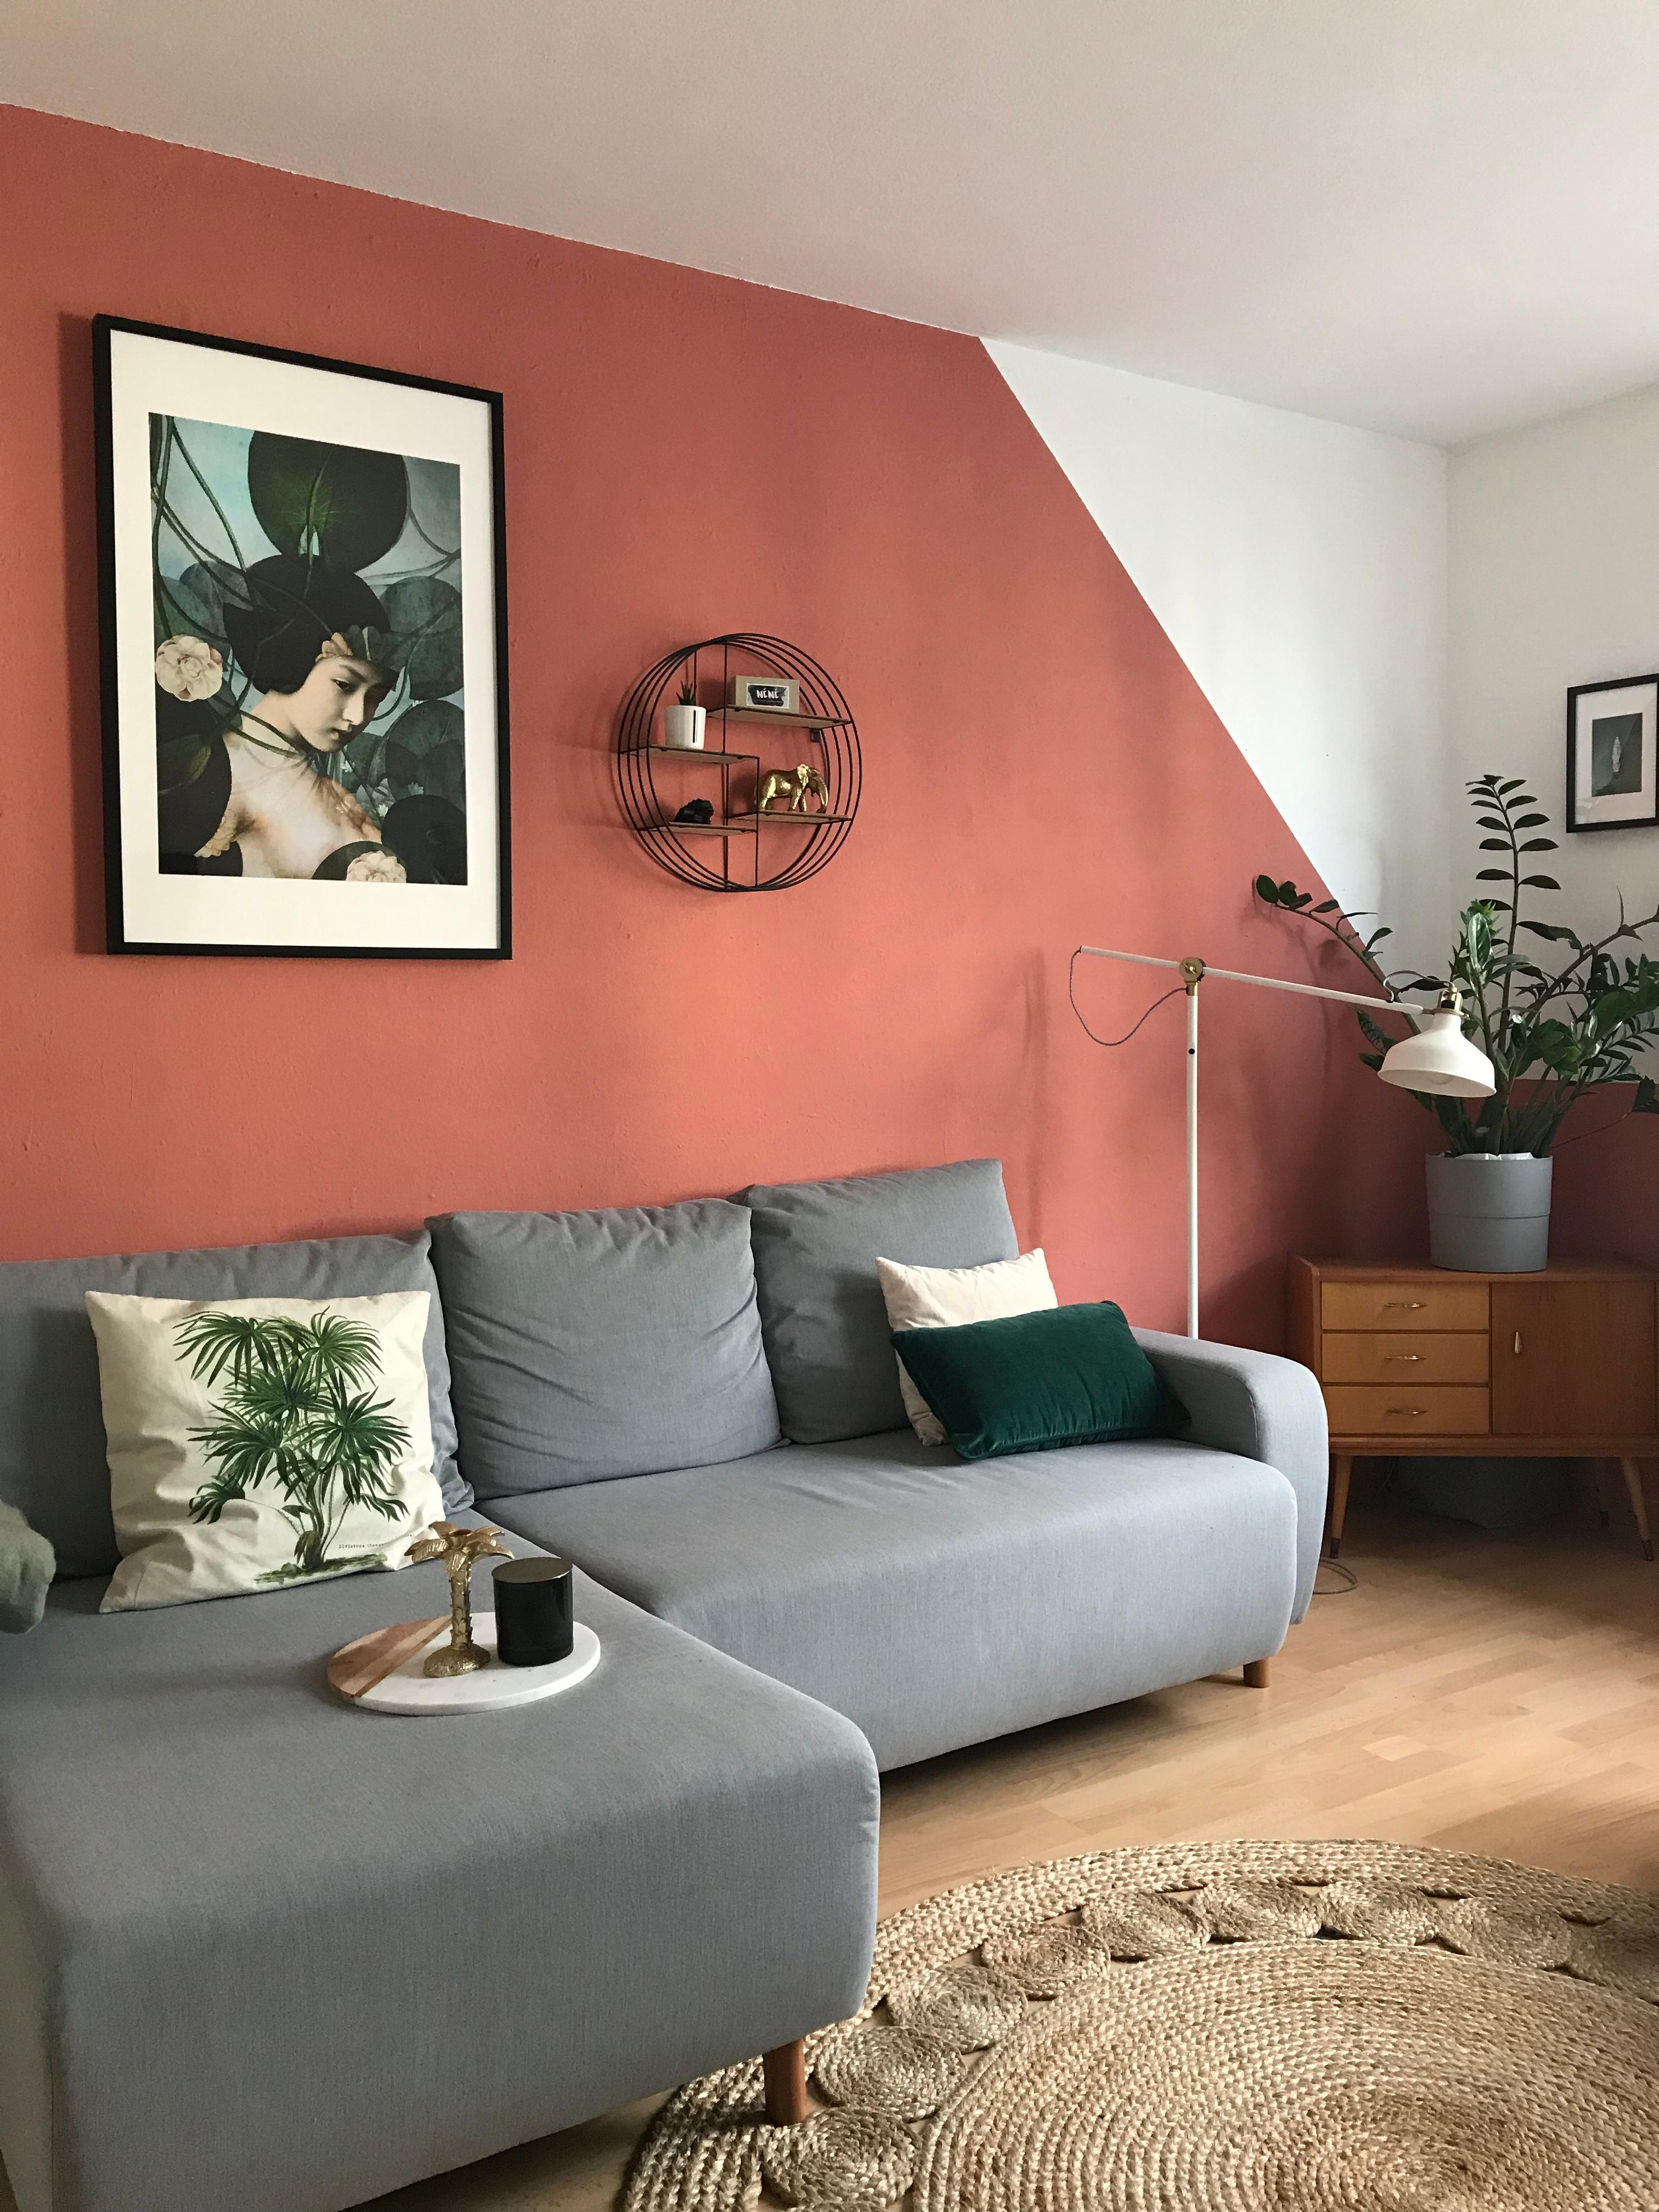 Neue Wandfarbe, neues Sofa! Ein kleines Projekt, das ich schon länger angehen wollte 💪🏼 